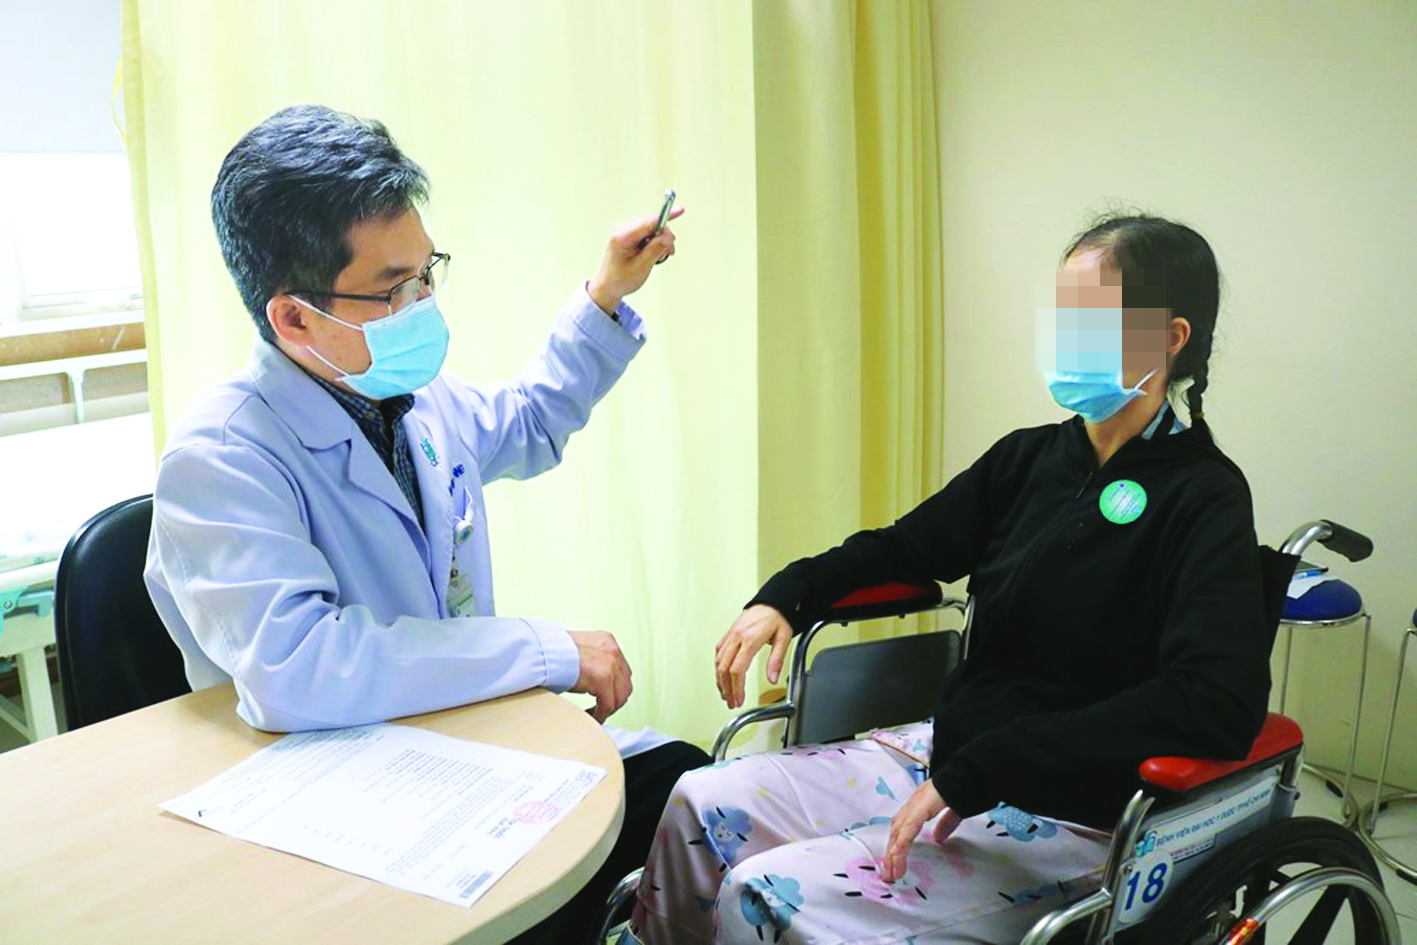 Tiến sĩ - bác sĩ Nguyễn Bá Thắng đang khám cho một trường hợp nghi ngờ có dấu hiệu đột quỵ